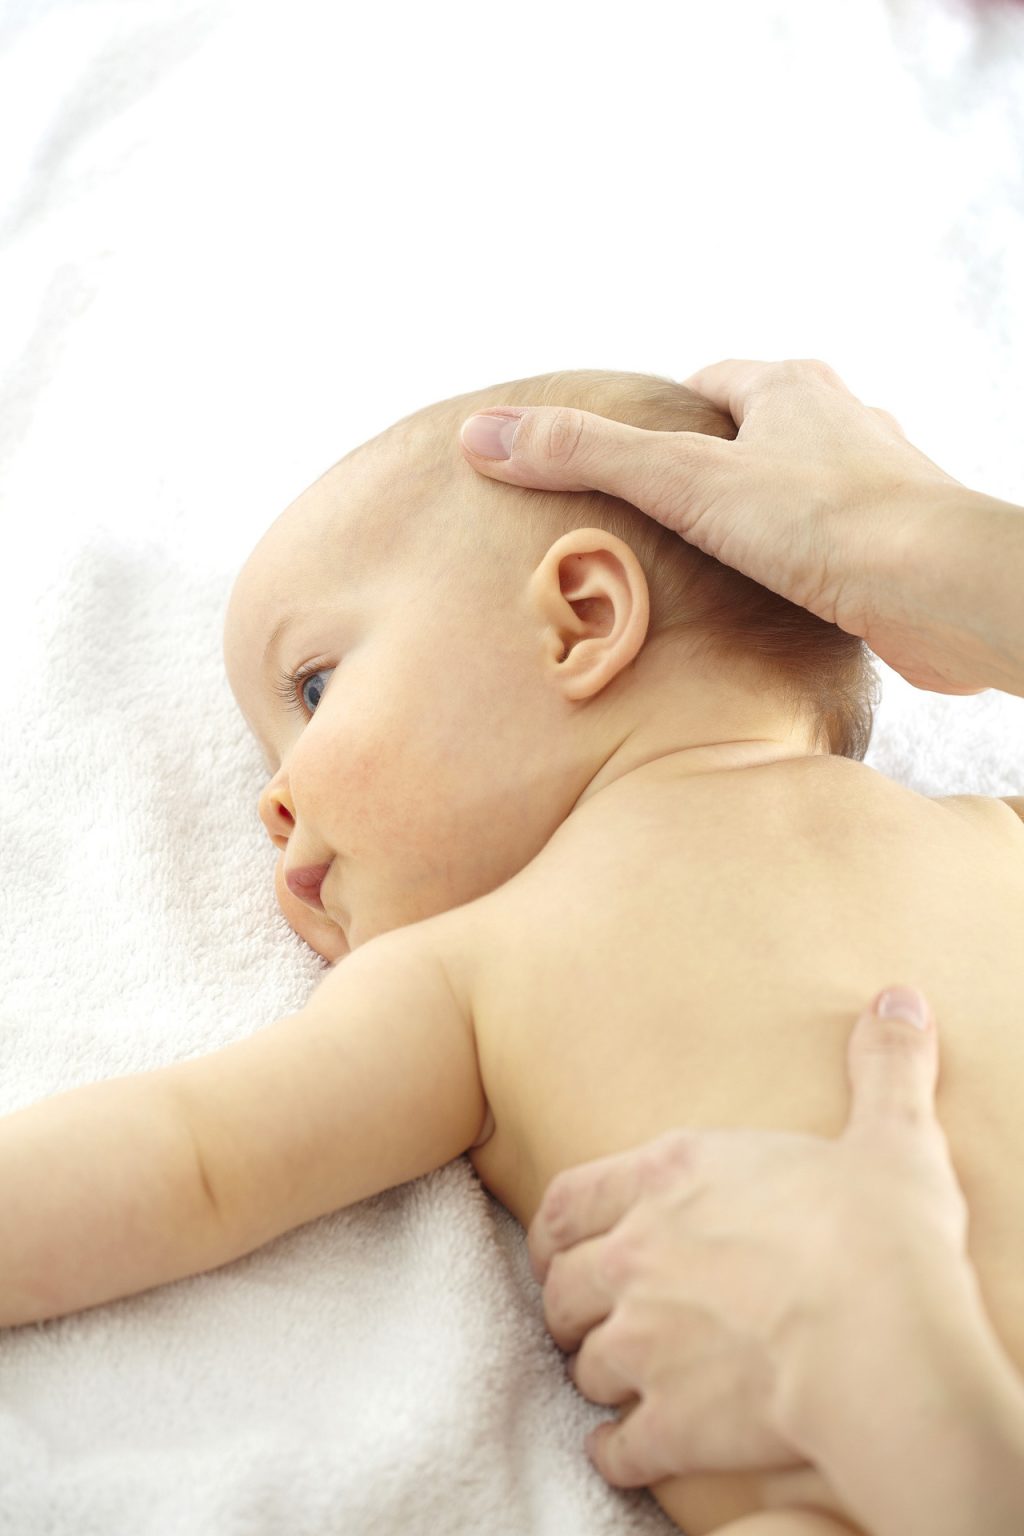 Säuglings Kinderosteopathie